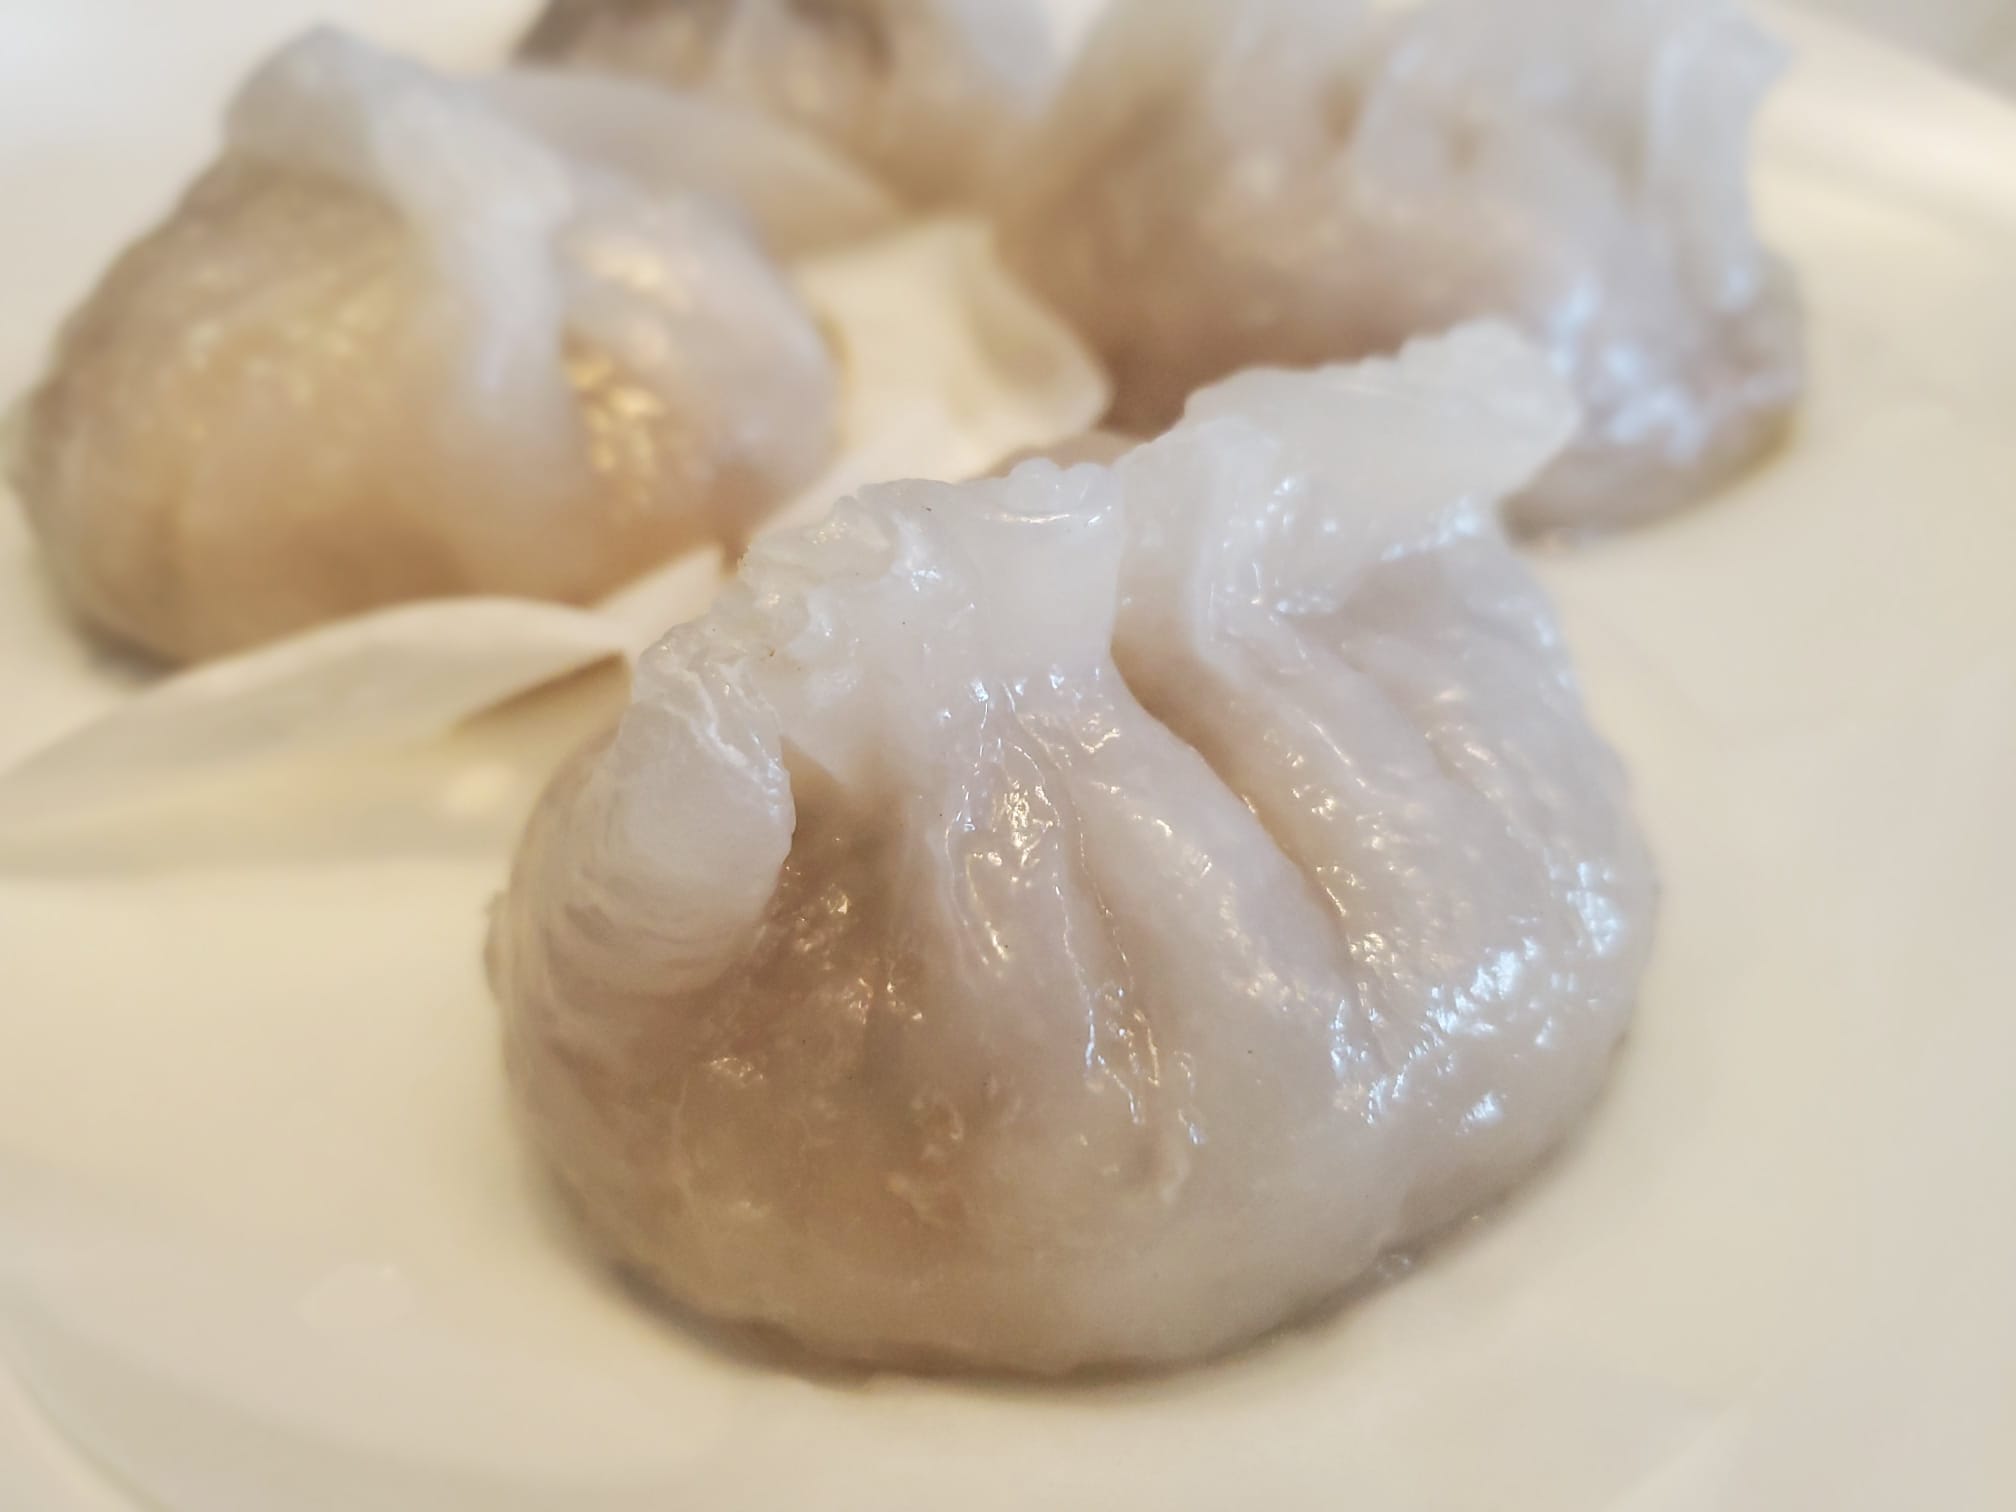 Chiu Chao Style Dumplings (12pcs)